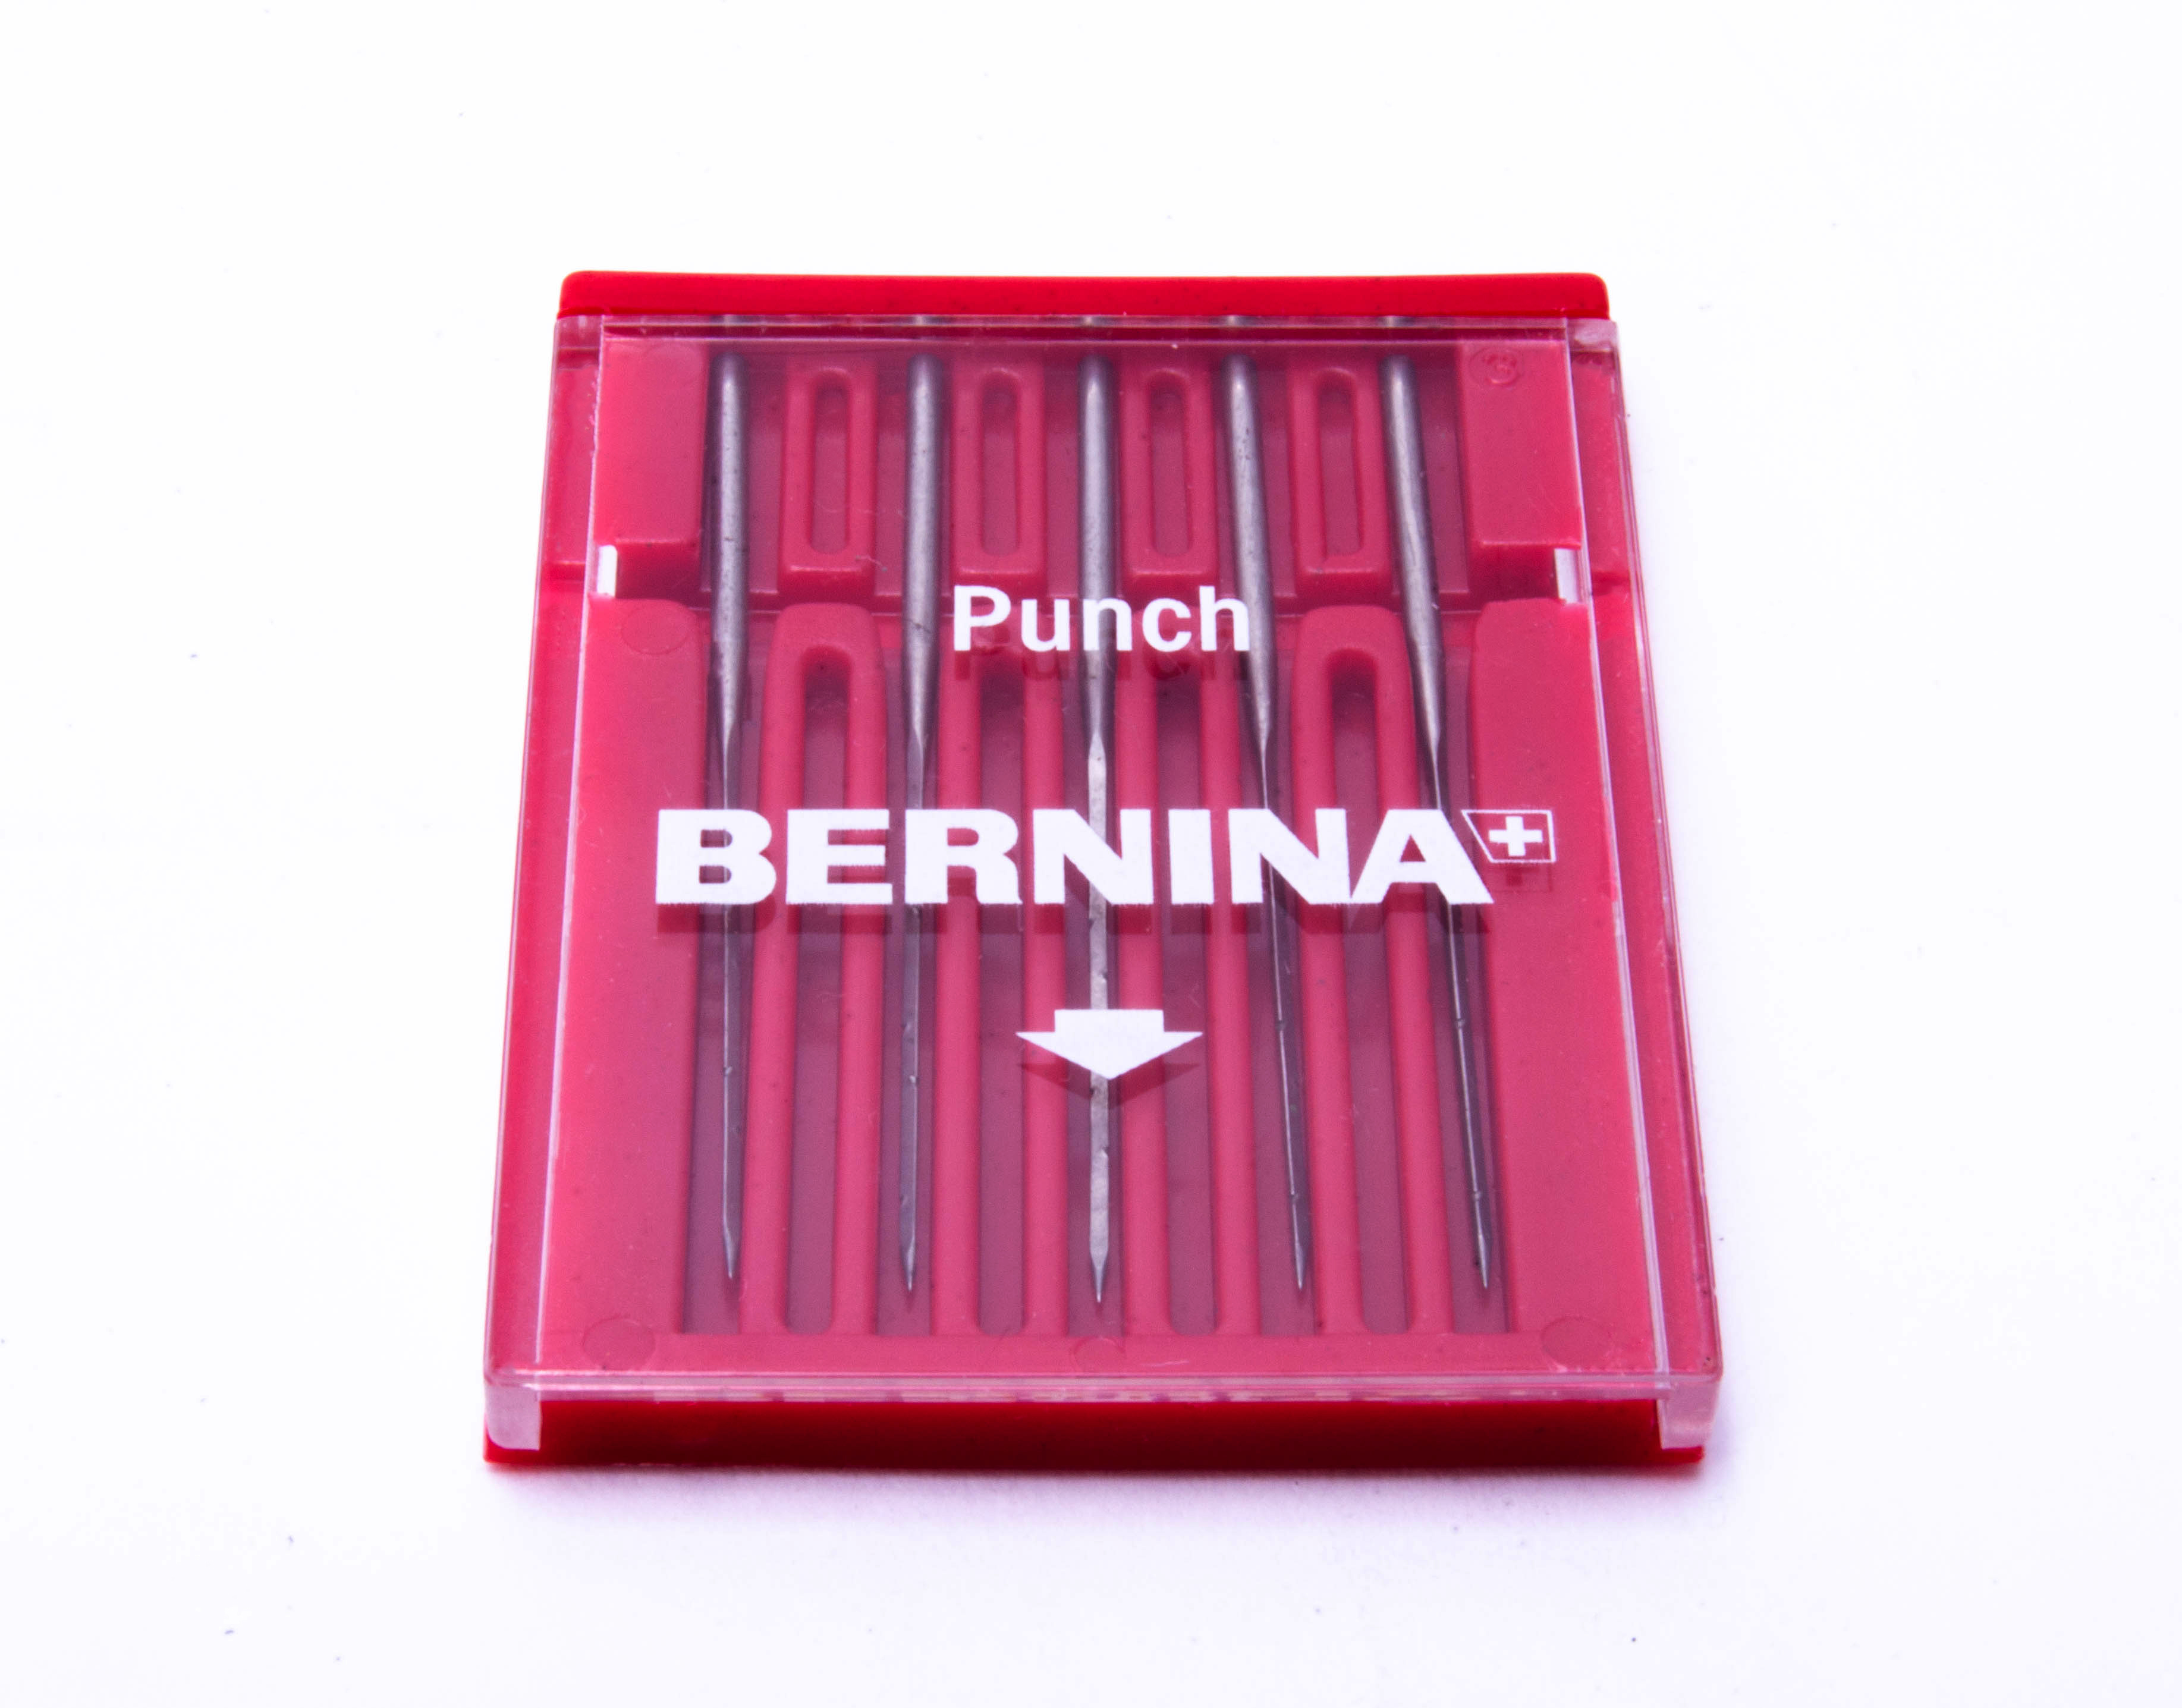 Agulha para Punch RH 032178.70.00 - Bernina